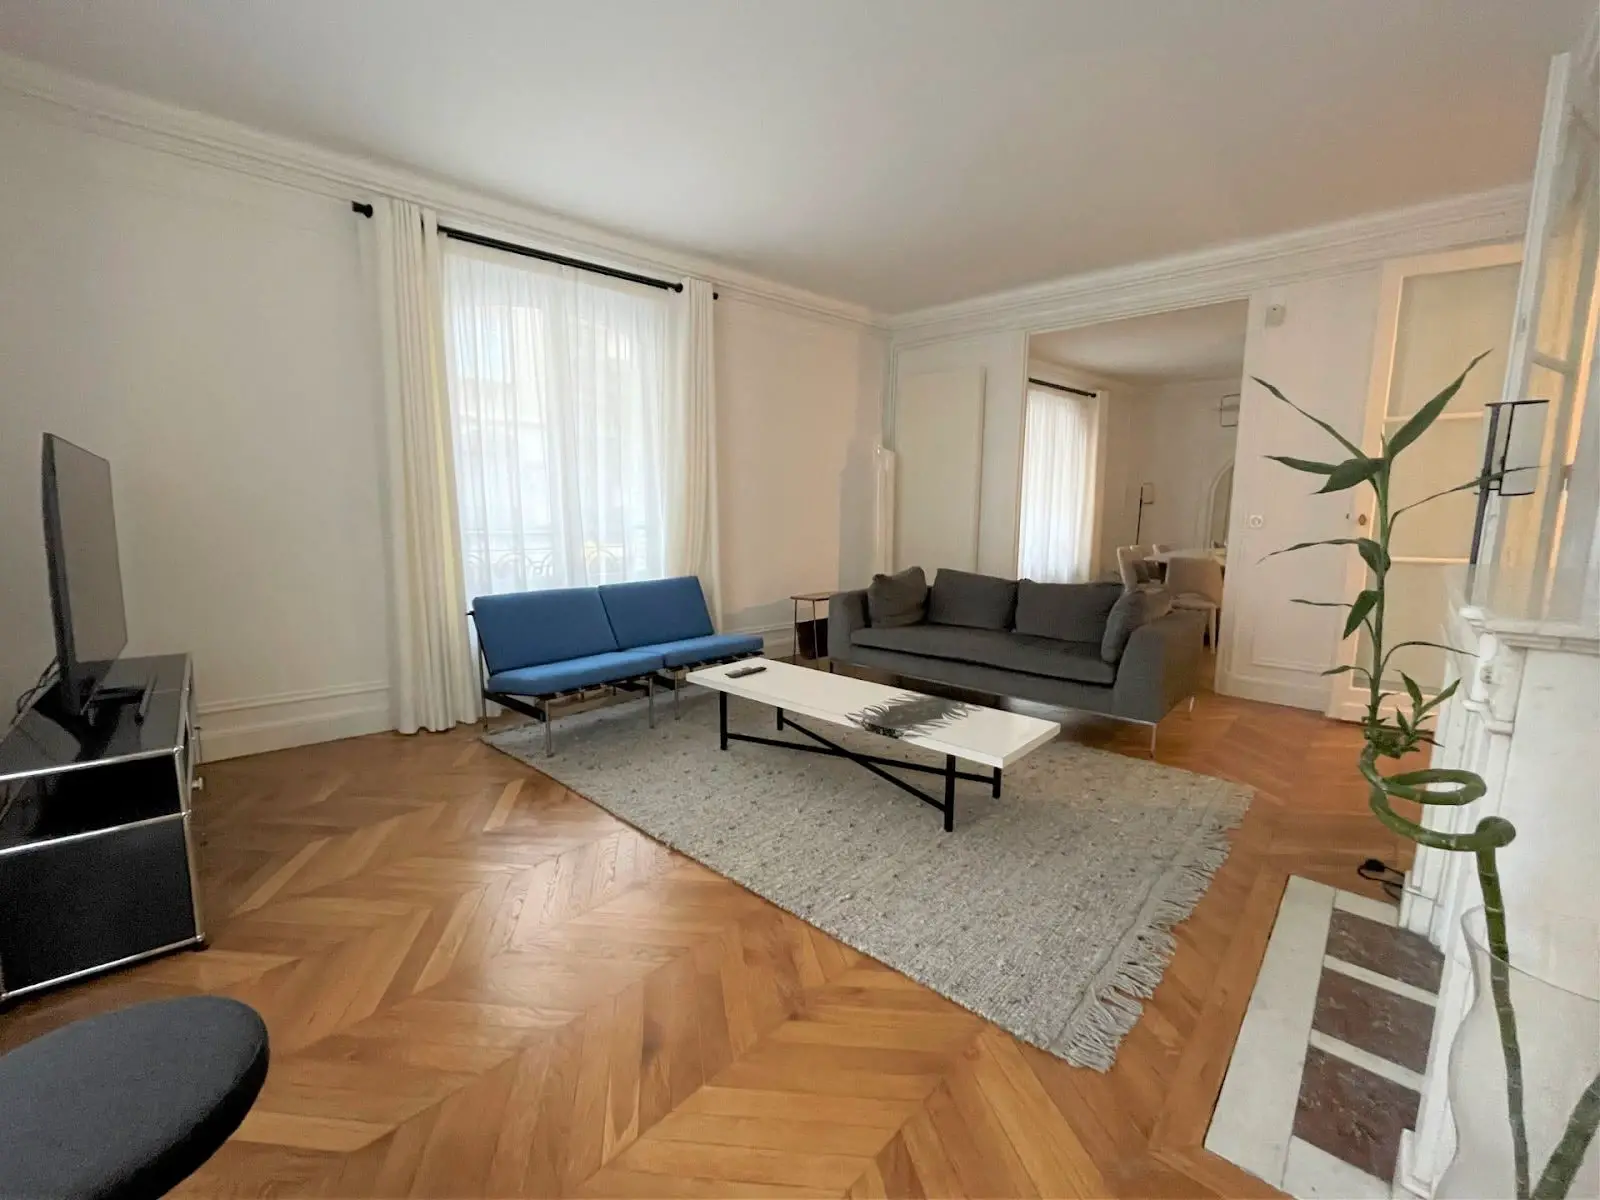 Location appartement meublé 5 pièces 128 m2